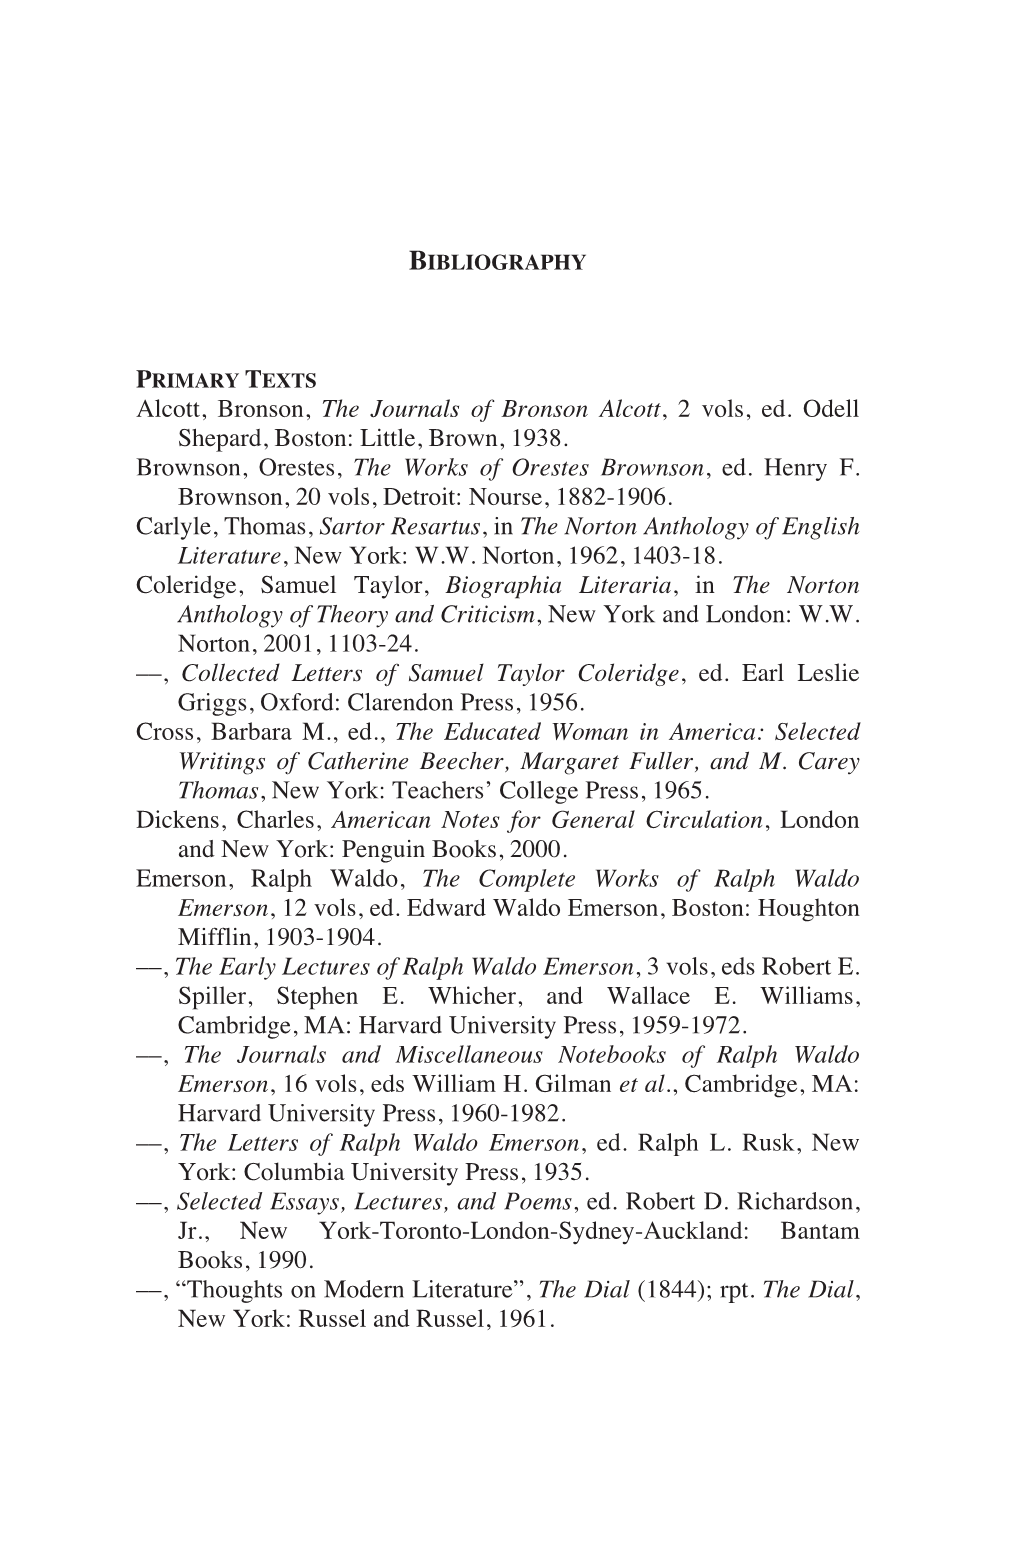 Alcott, Bronson, the Journals of Bronson Alcott, 2 Vols, Ed. Odell Shepard, Boston: Little, Brown, 1938. Brownson, Orestes, the Works of Orestes Brownson, Ed